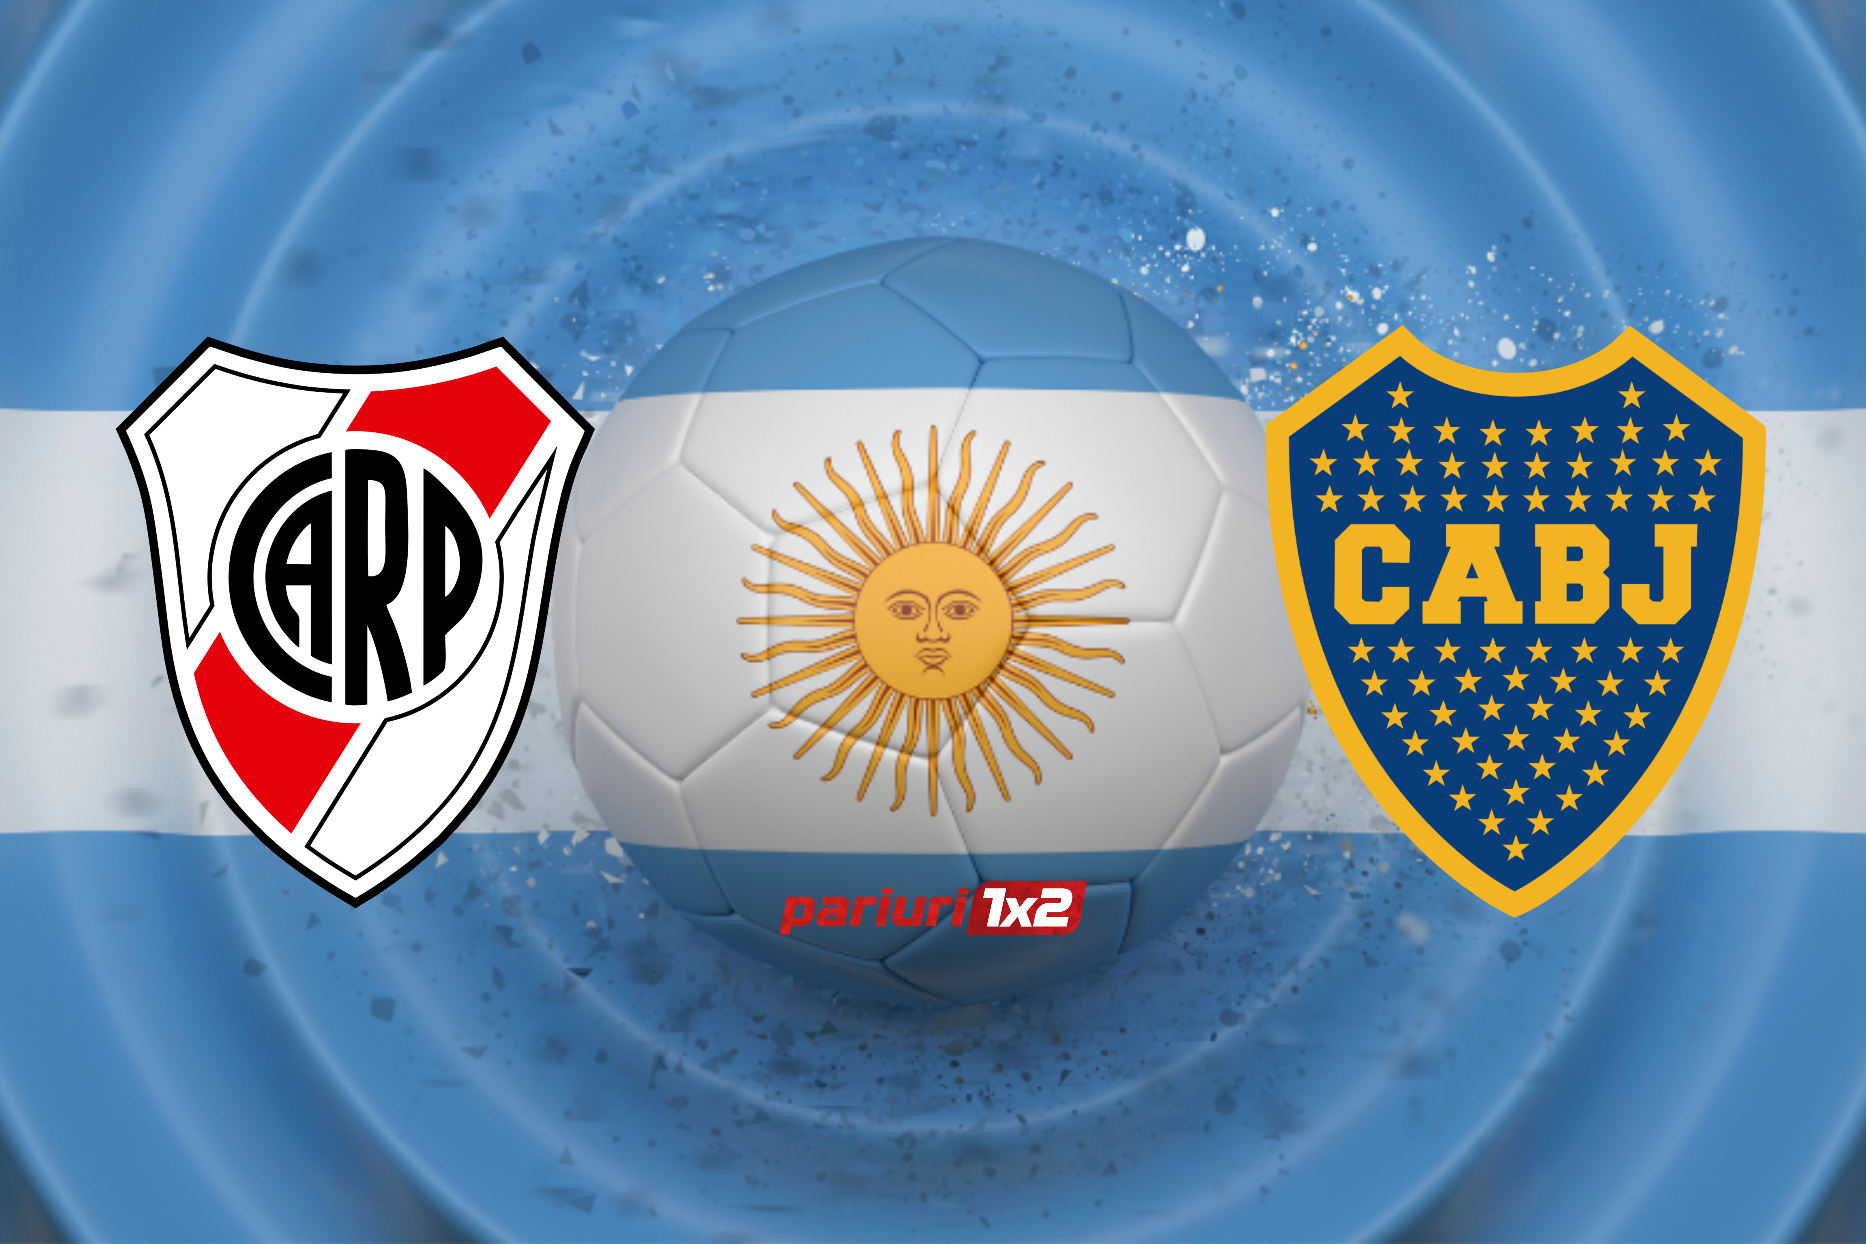 Ponturi fotbal » River Plate - Boca Juniors